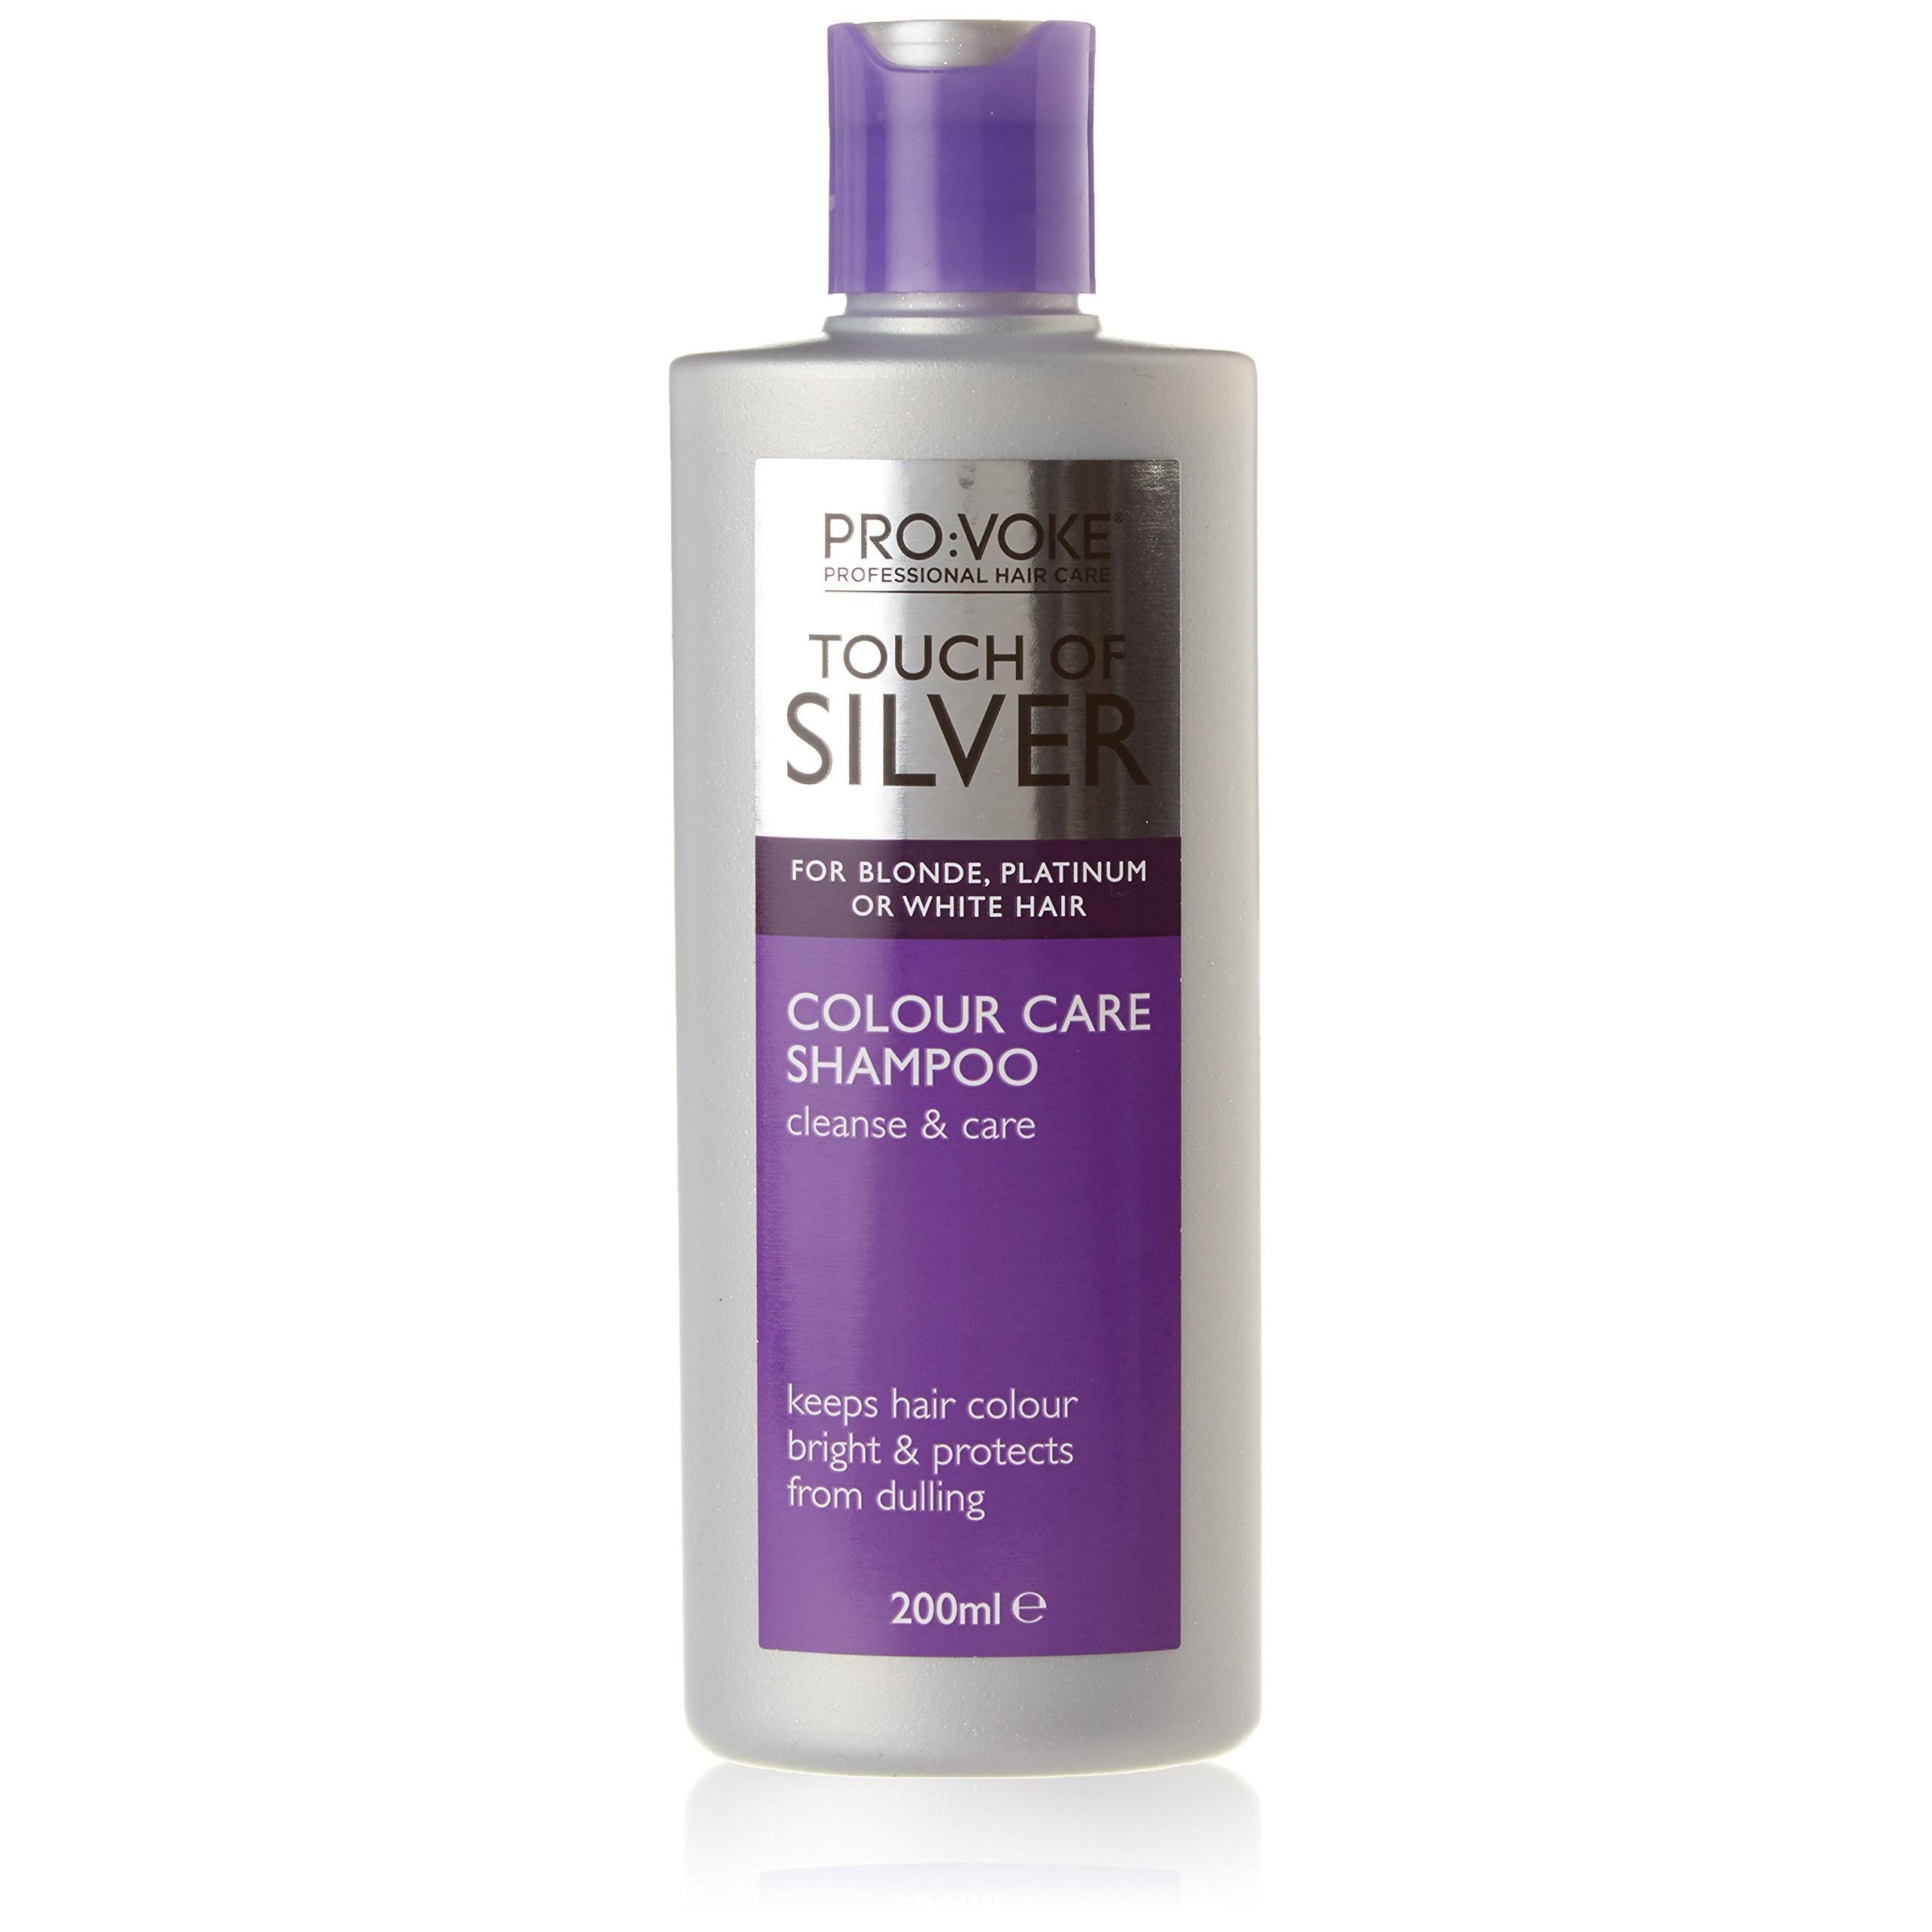 Pro:Voke Touch Of Silver Colour Care Shampoo - 200ml